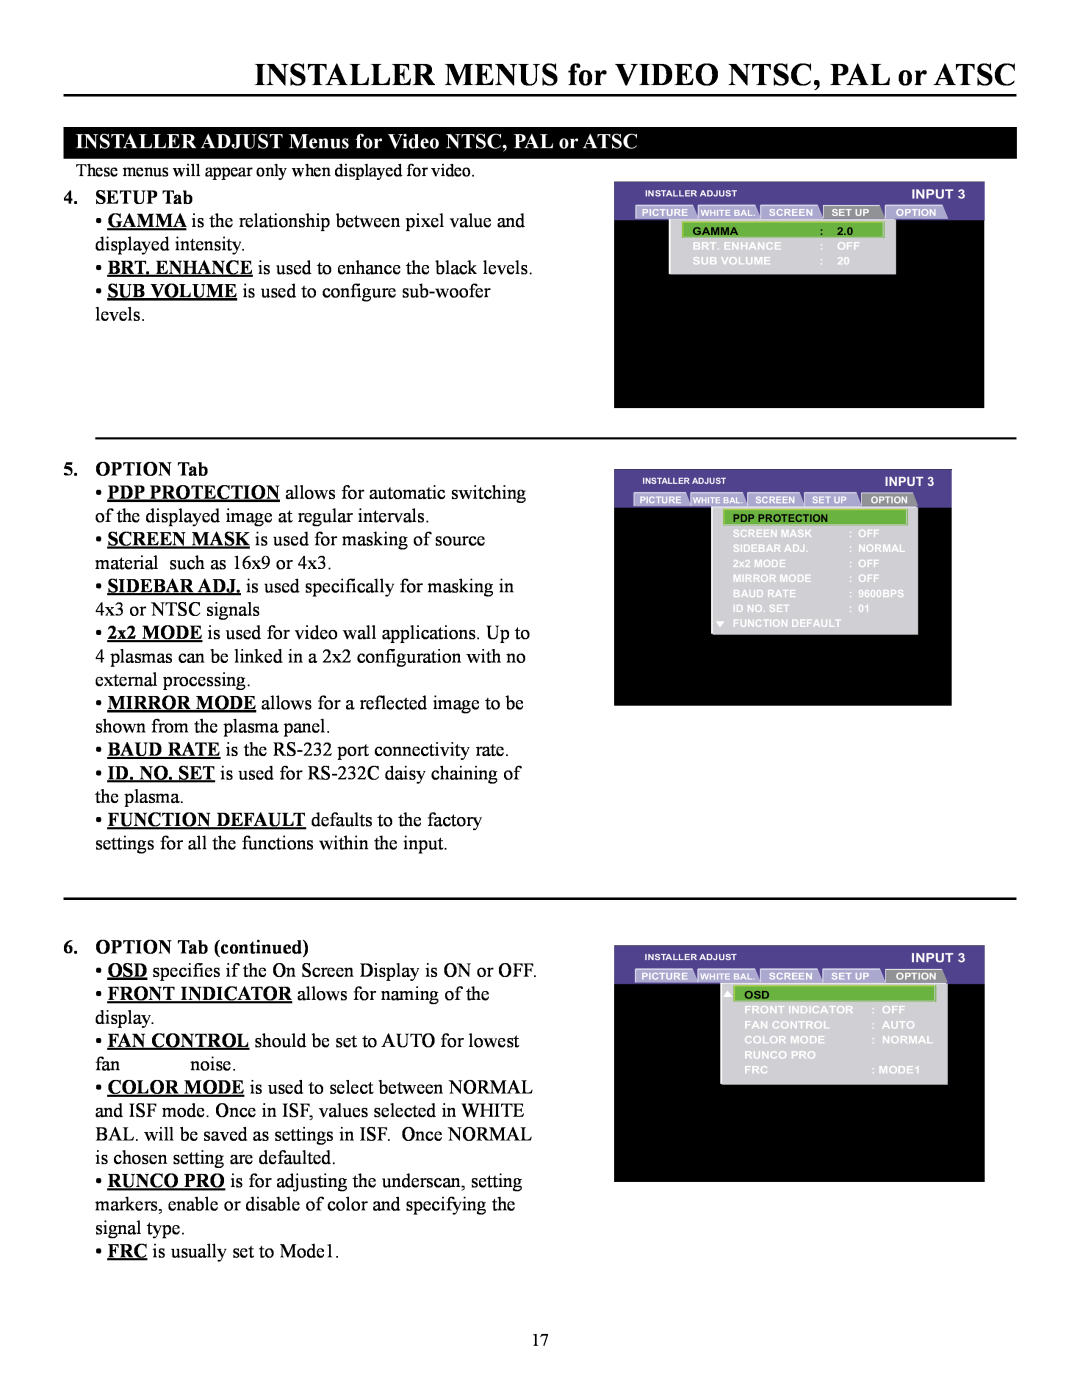 Runco CW-50MC INSTALLER MENUS for VIDEO NTSC, PAL or ATSC, INSTALLER ADJUST Menus for Video NTSC, PAL or ATSC, SETUP Tab 